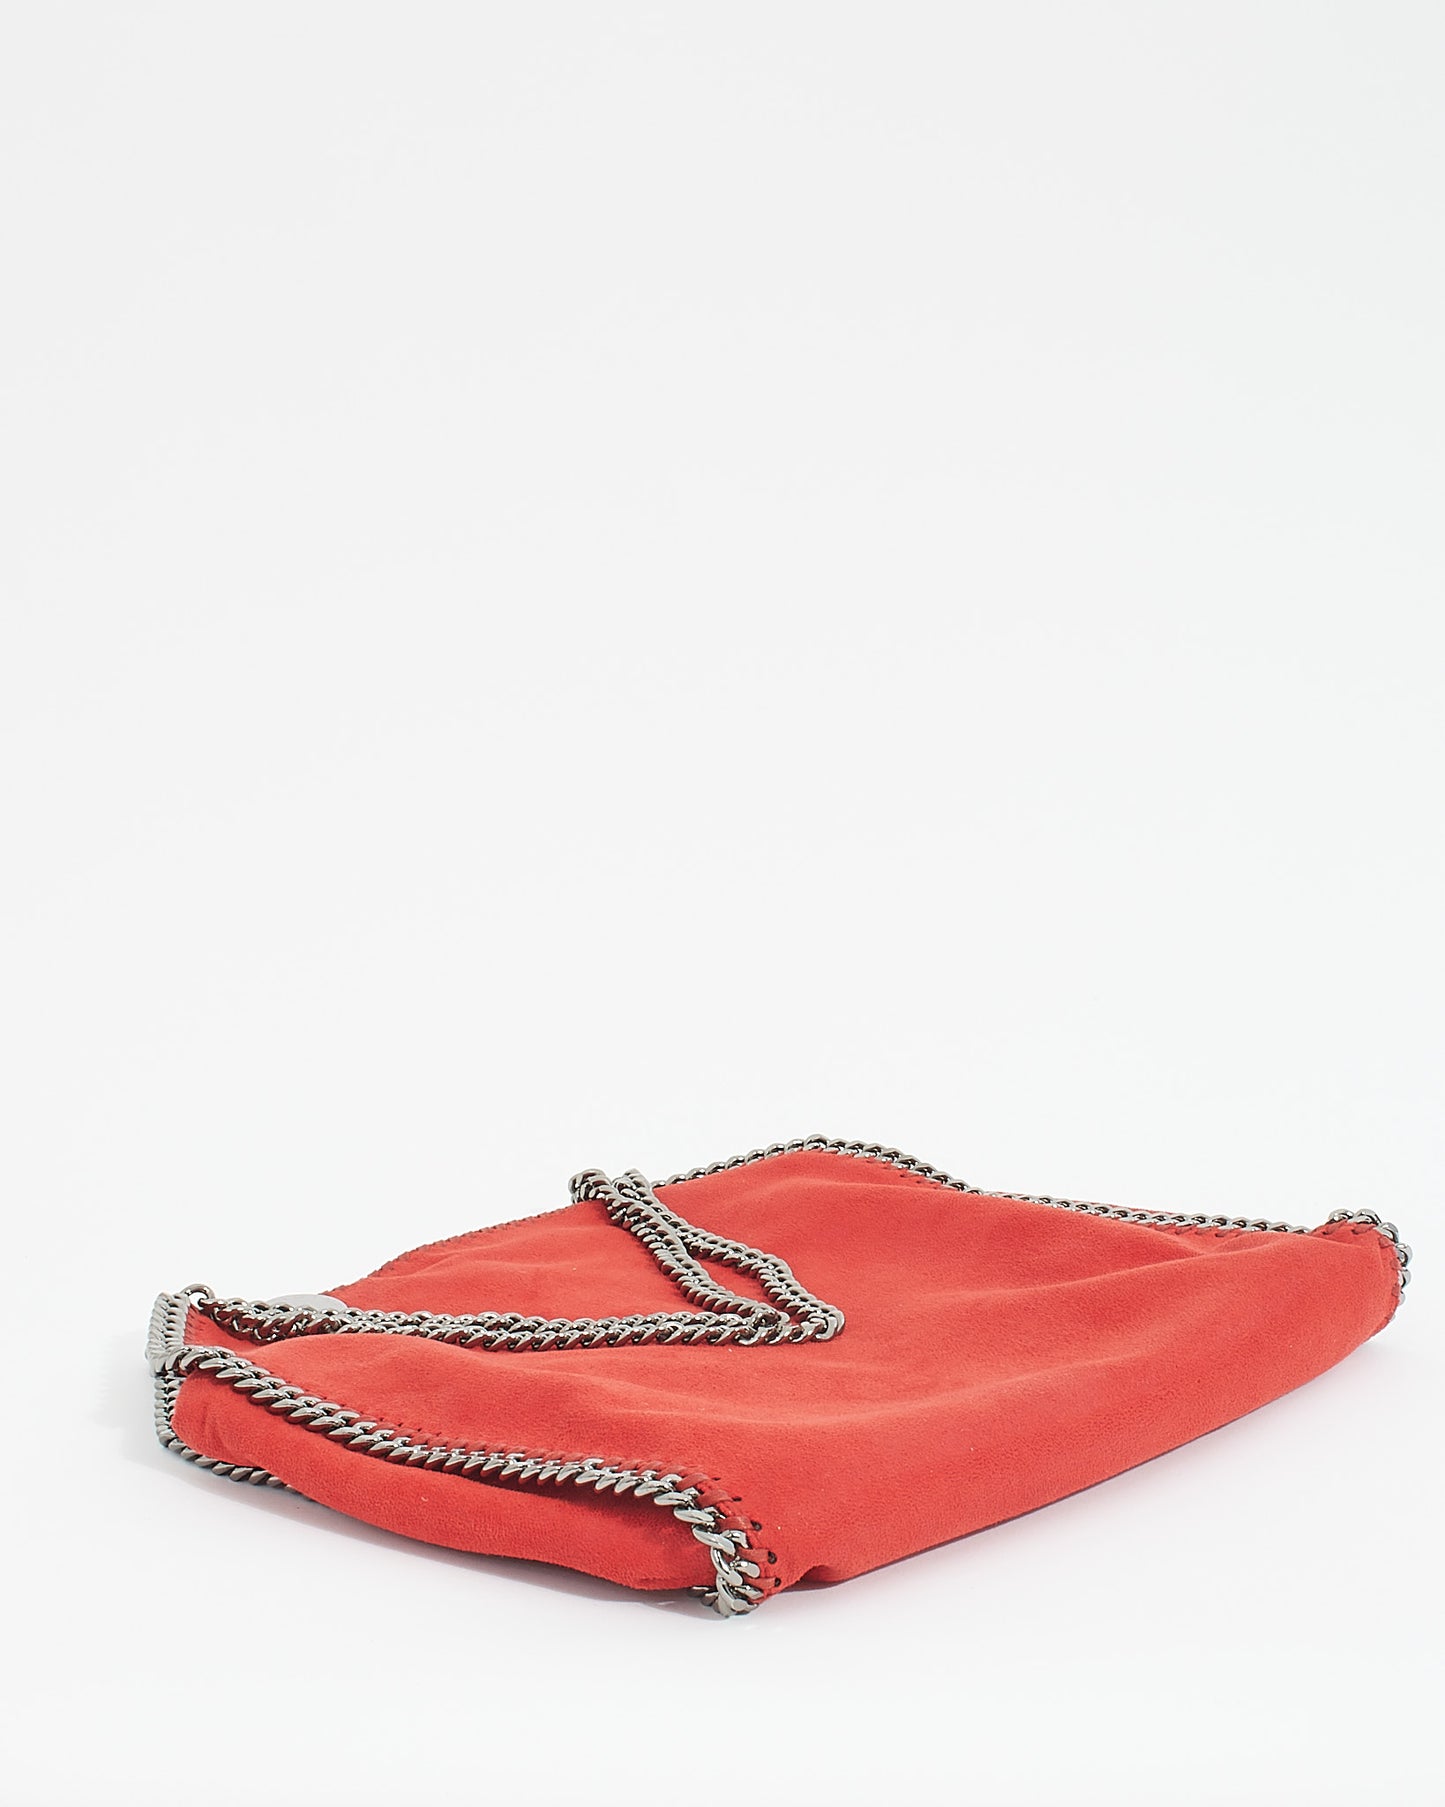 Stella McCartney Red Vegan Leather Falabella Shoulder Bag